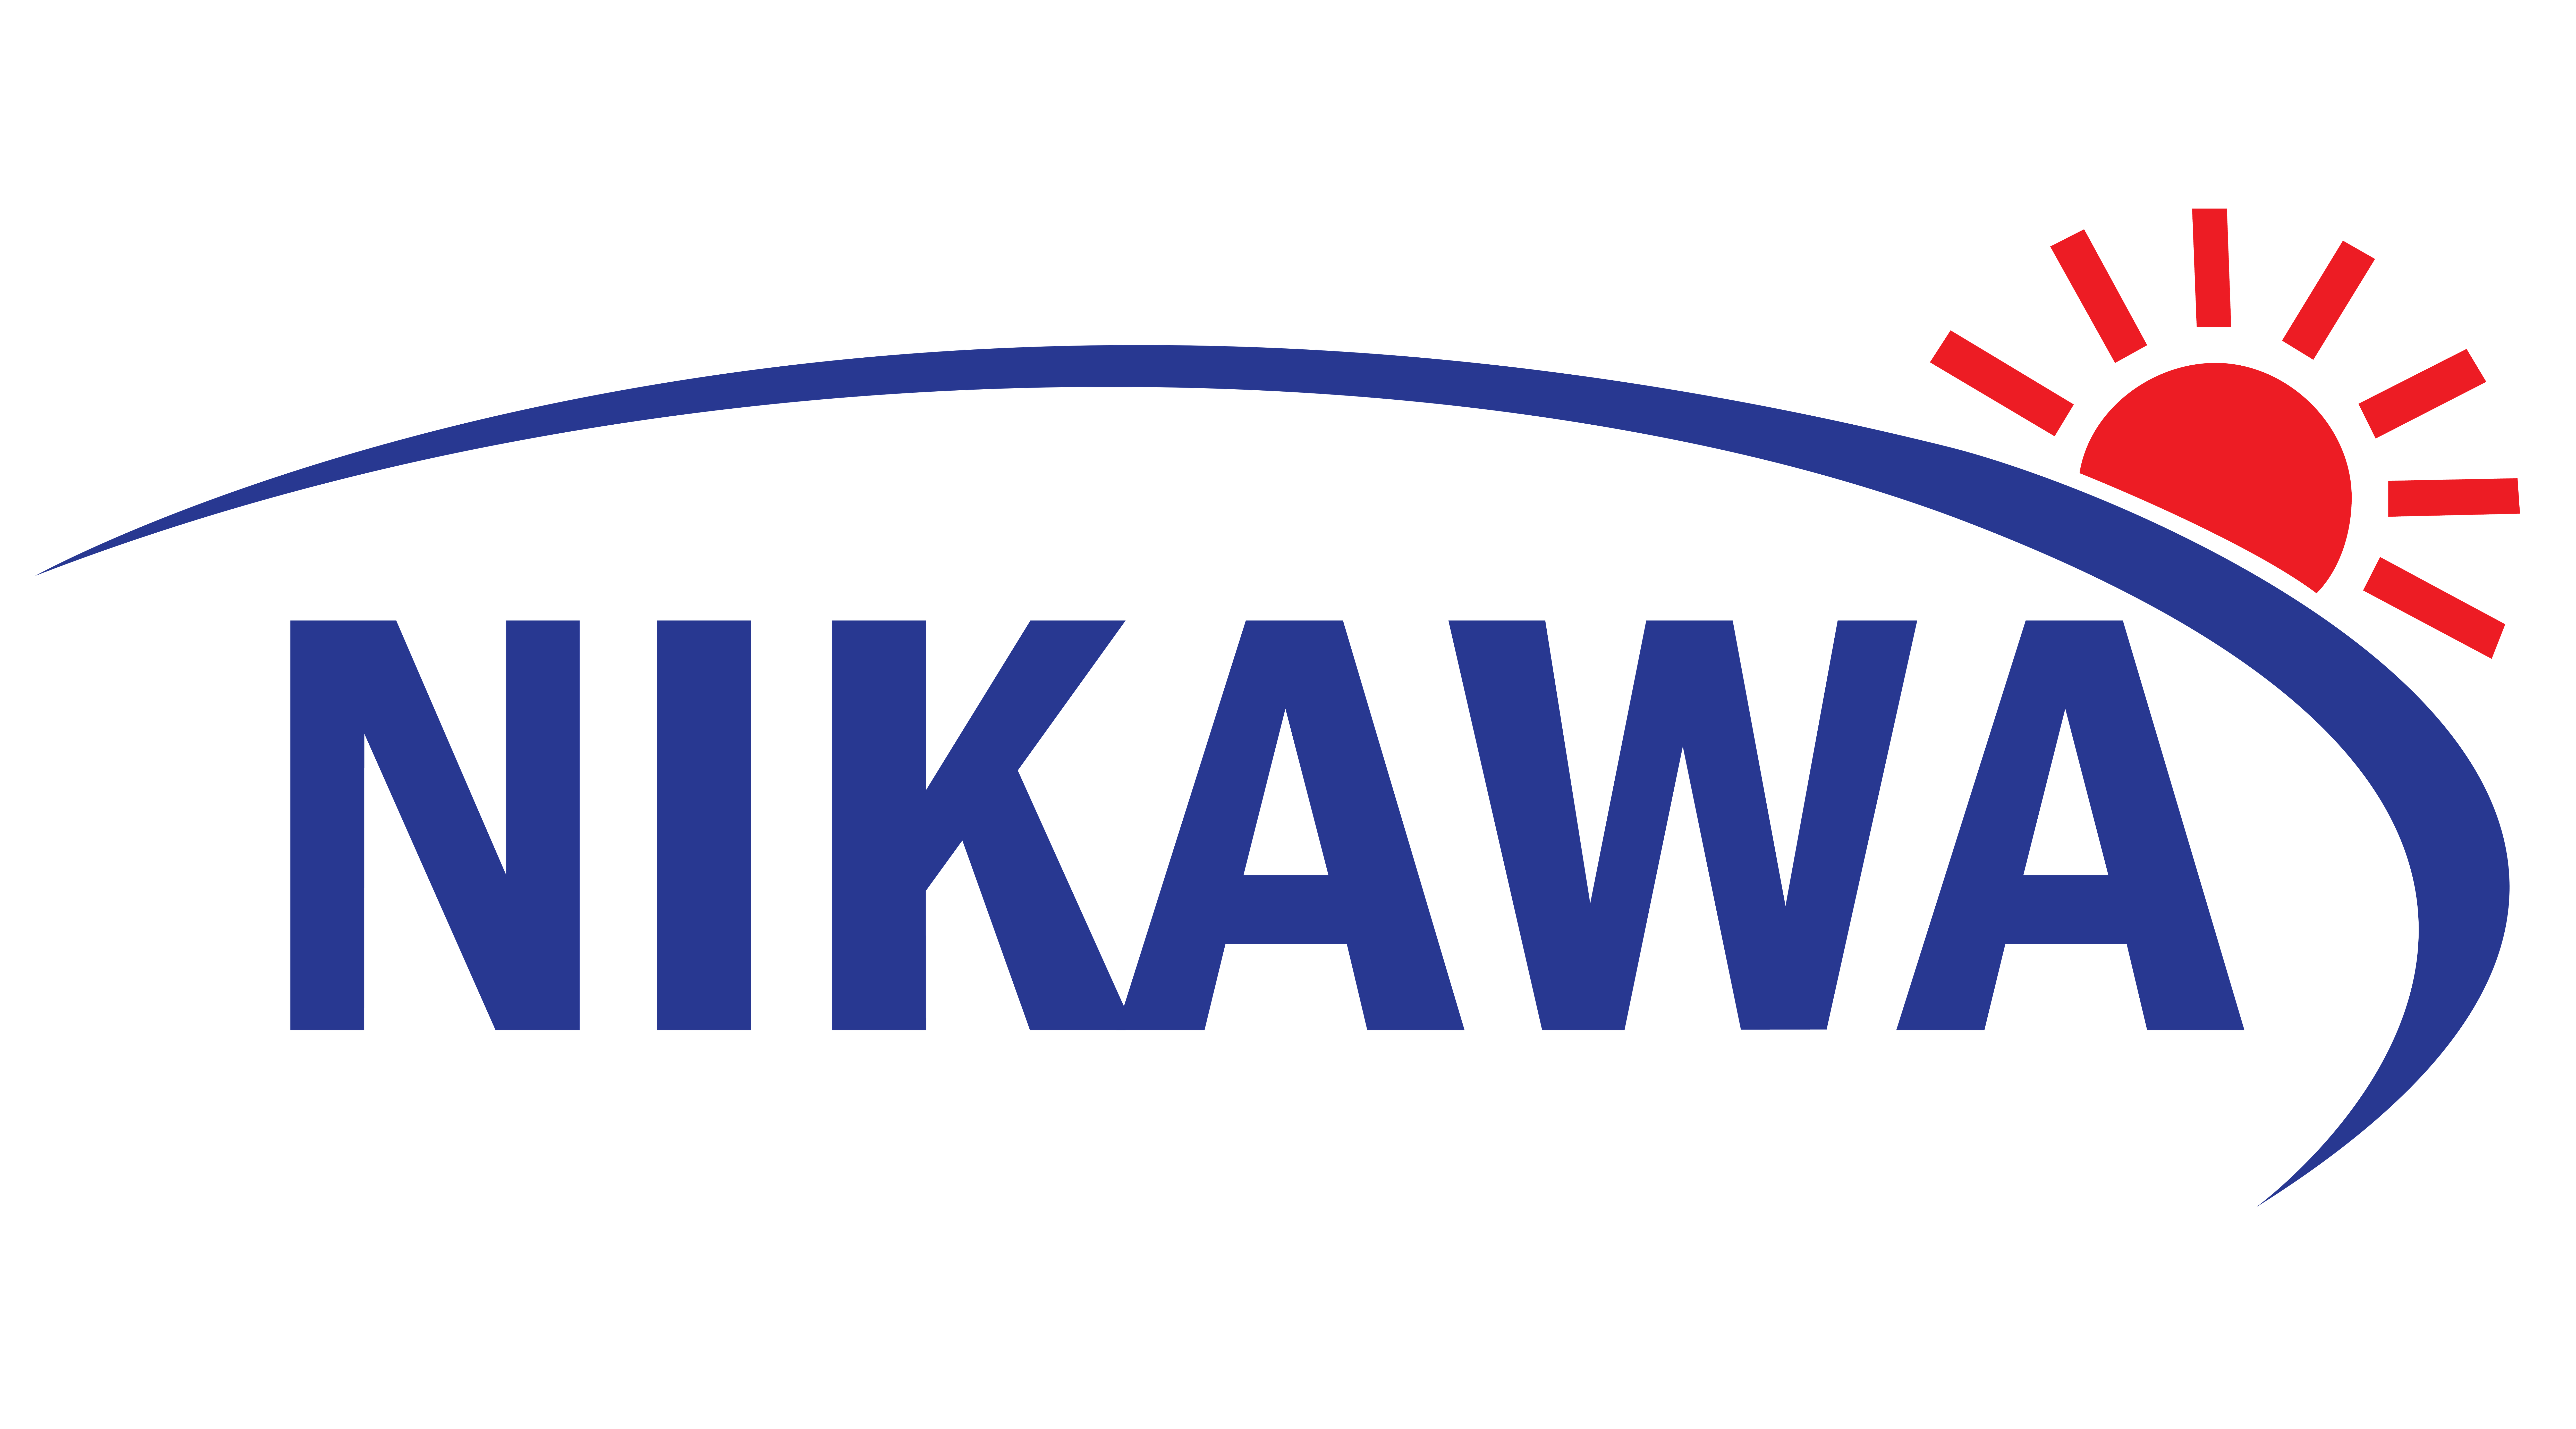 Nikawa- thương hiệu thang nhôm của tương lai